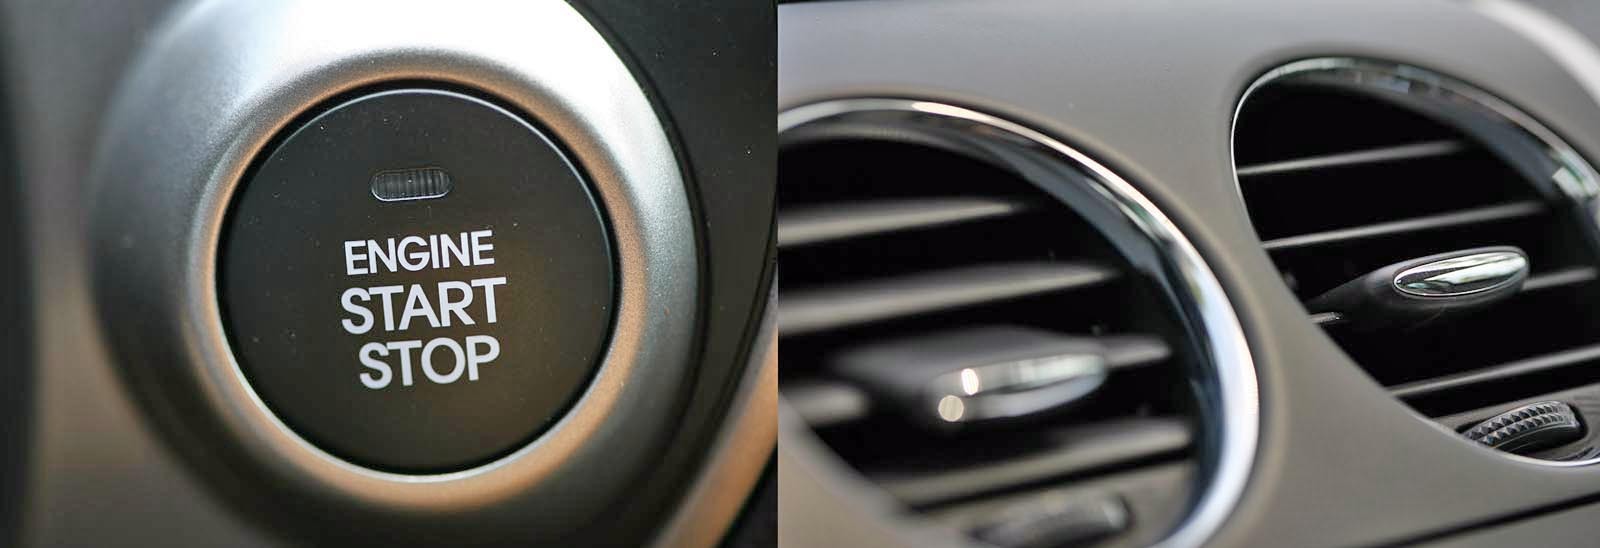 Butonul Start/Stop al lui Hyundai ix35 e o idee mai buna. Mazda CX-7 adopta un stil sobru per total